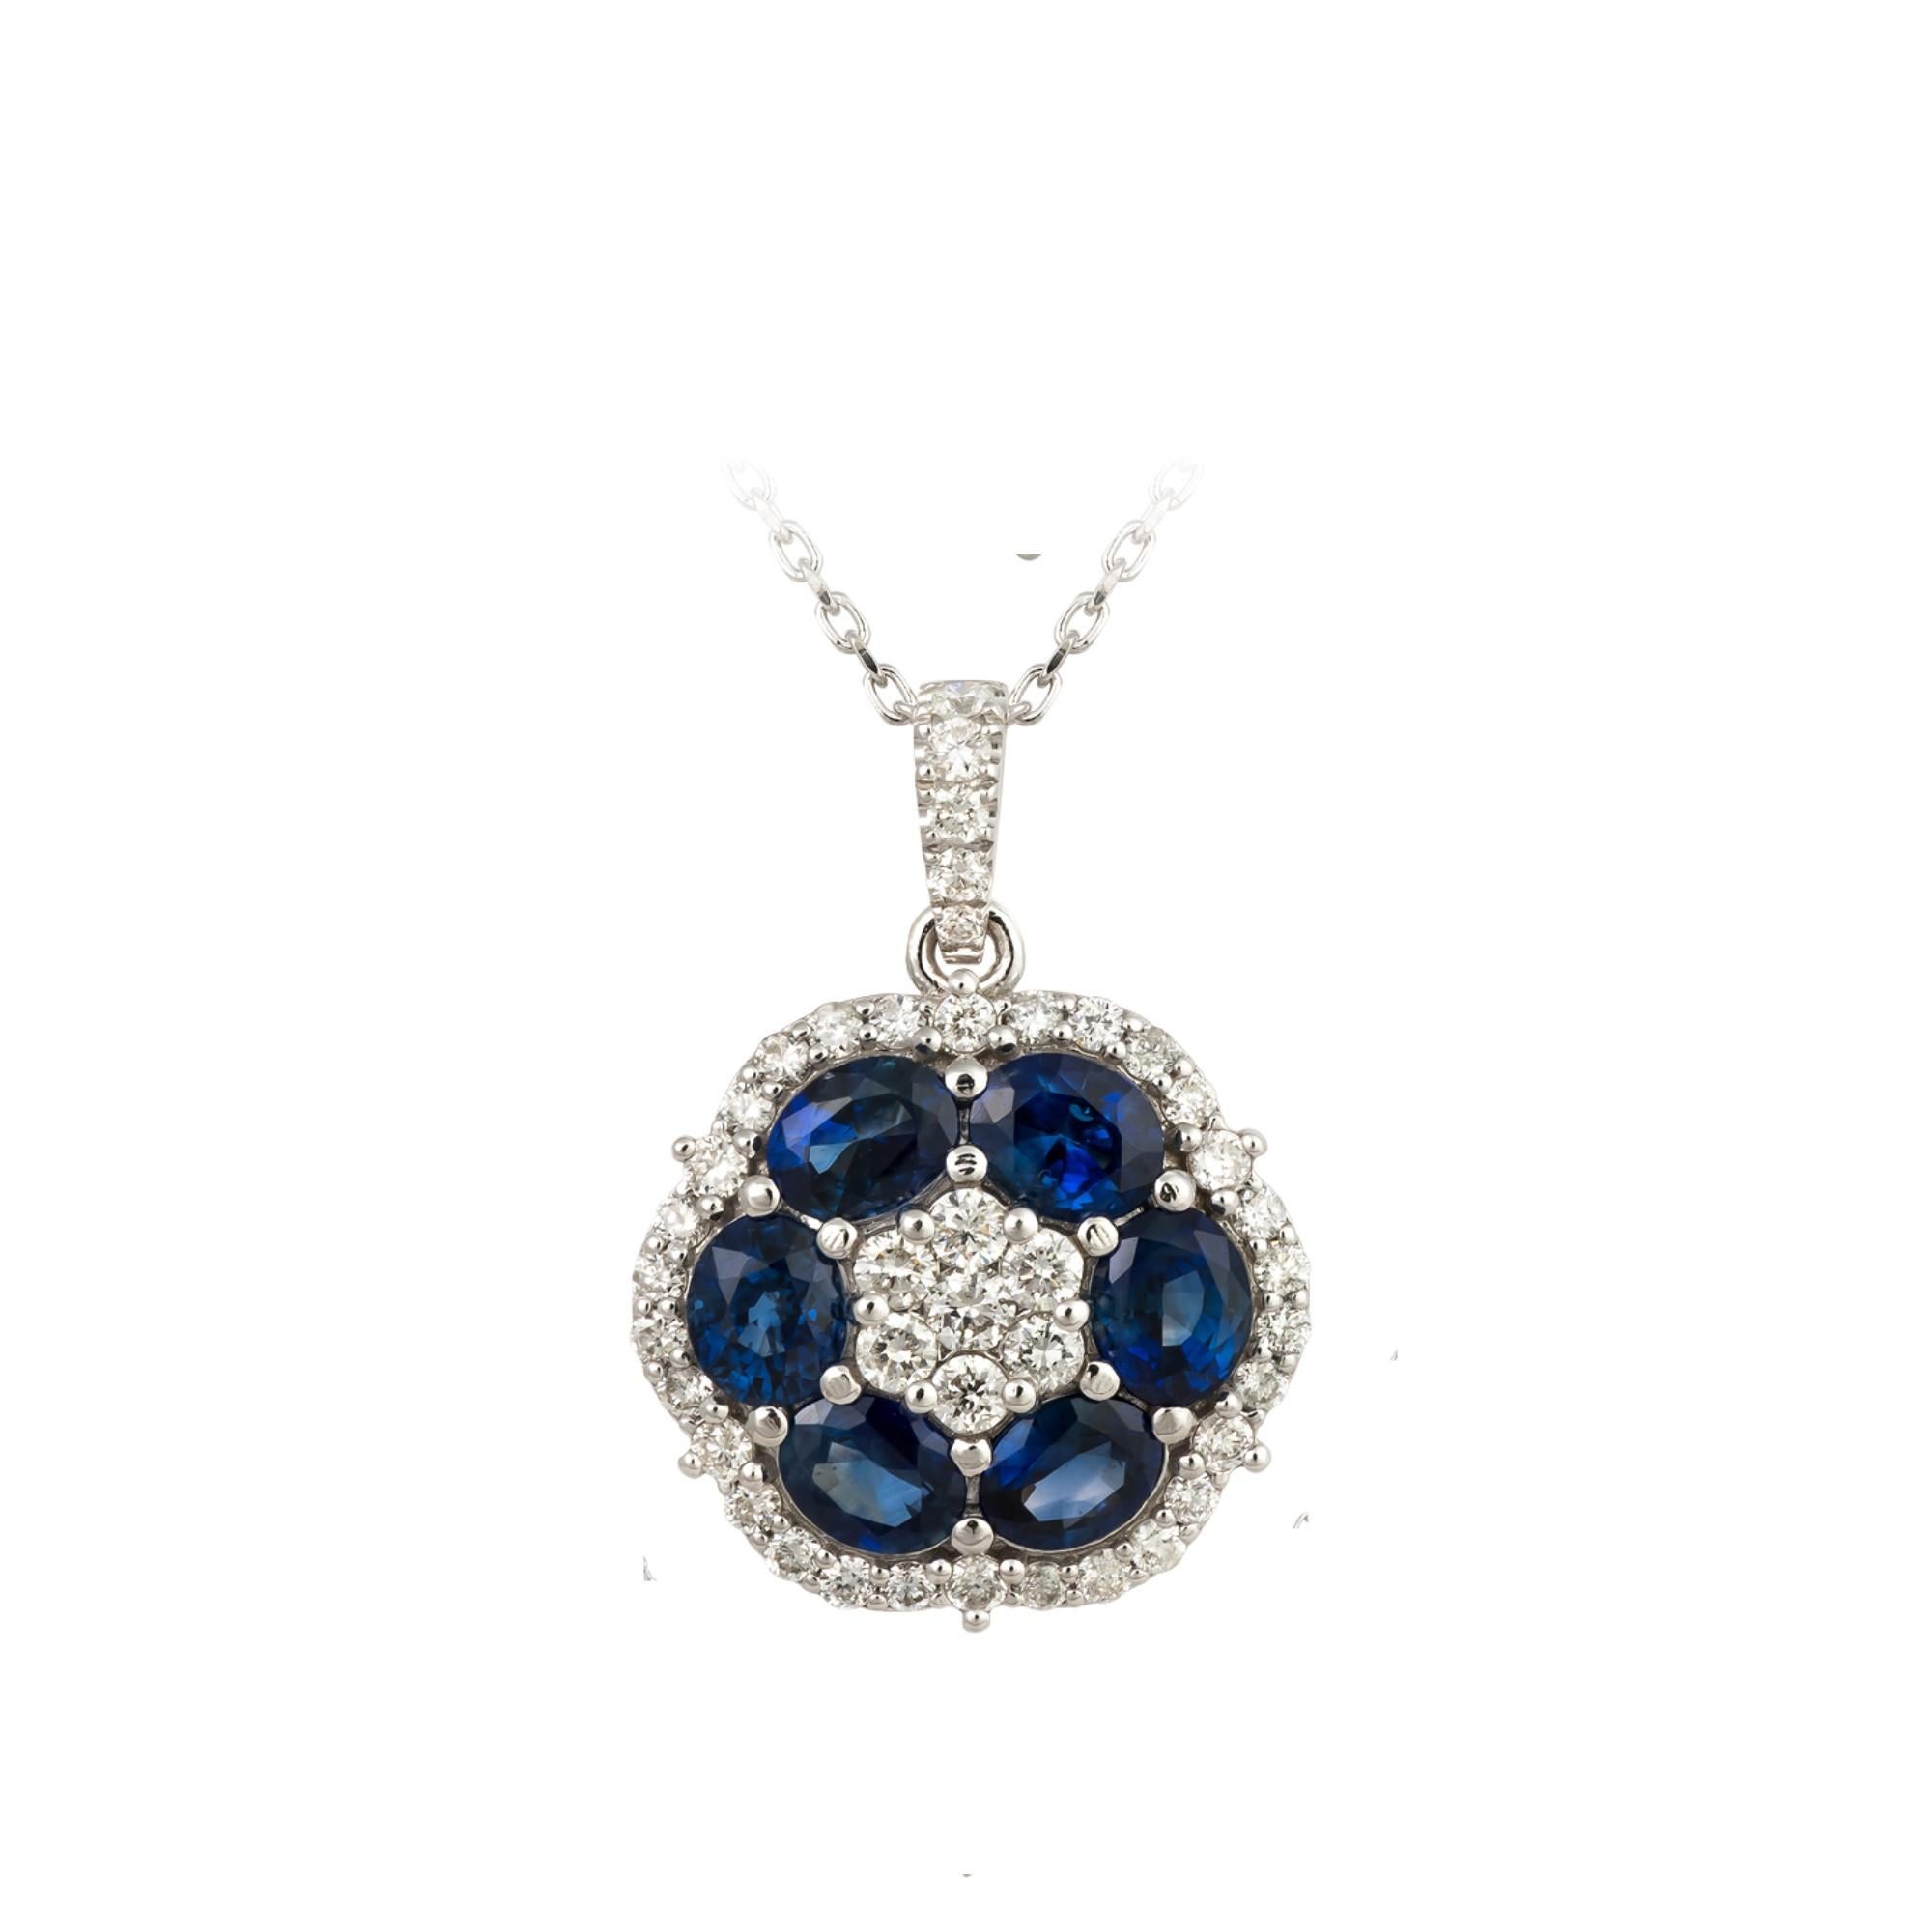 L'article suivant est un Rare Important Radiant 18KT Gold Gorgeous Large Shimmering Blue Sapphire and Diamond Pendant Necklace. Le pendentif est composé de magnifiques saphirs bleus scintillants et orné de diamants scintillants formant une fleur !